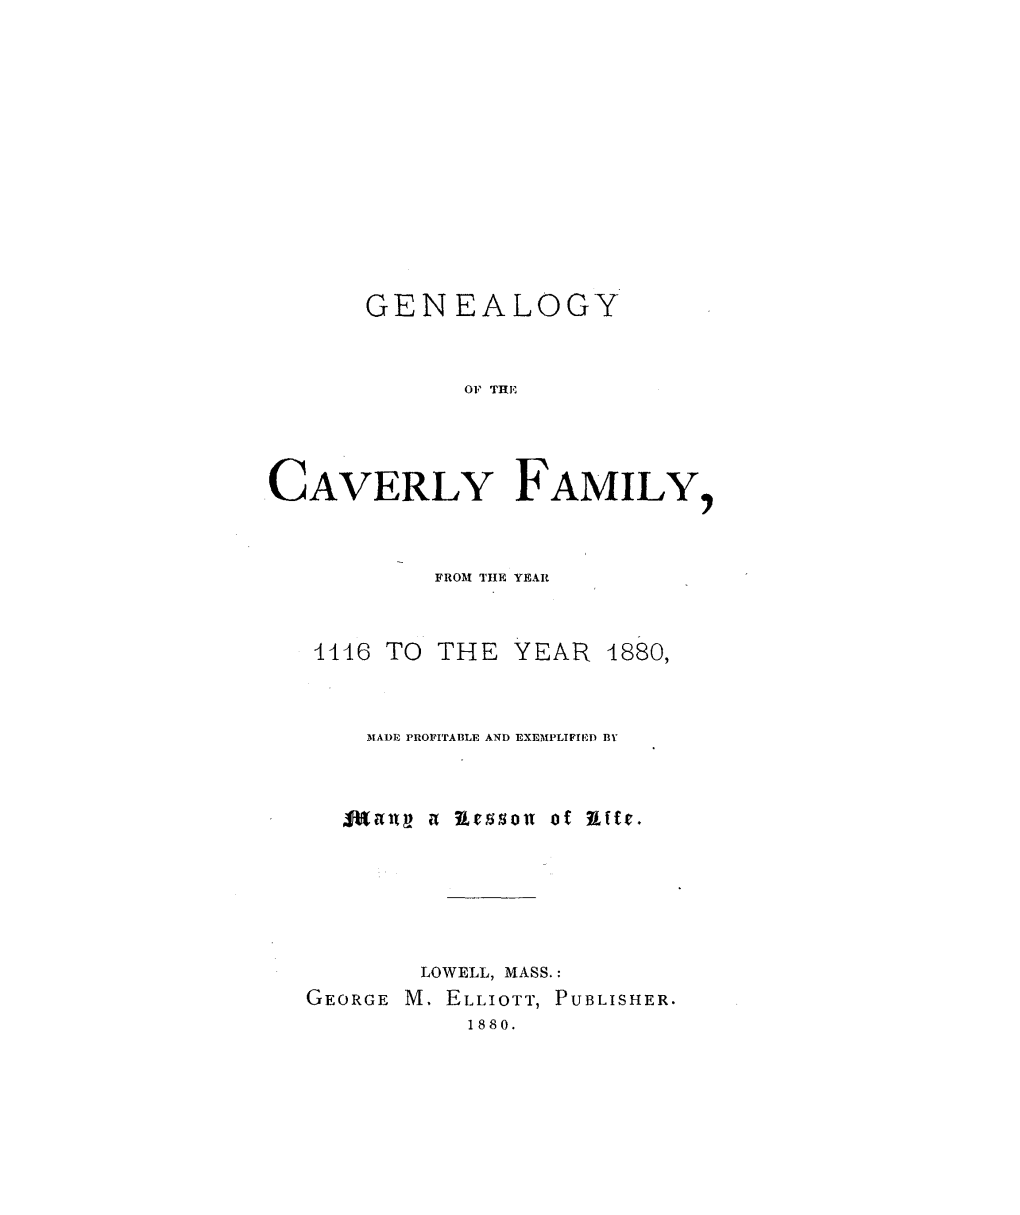 Caverly Family